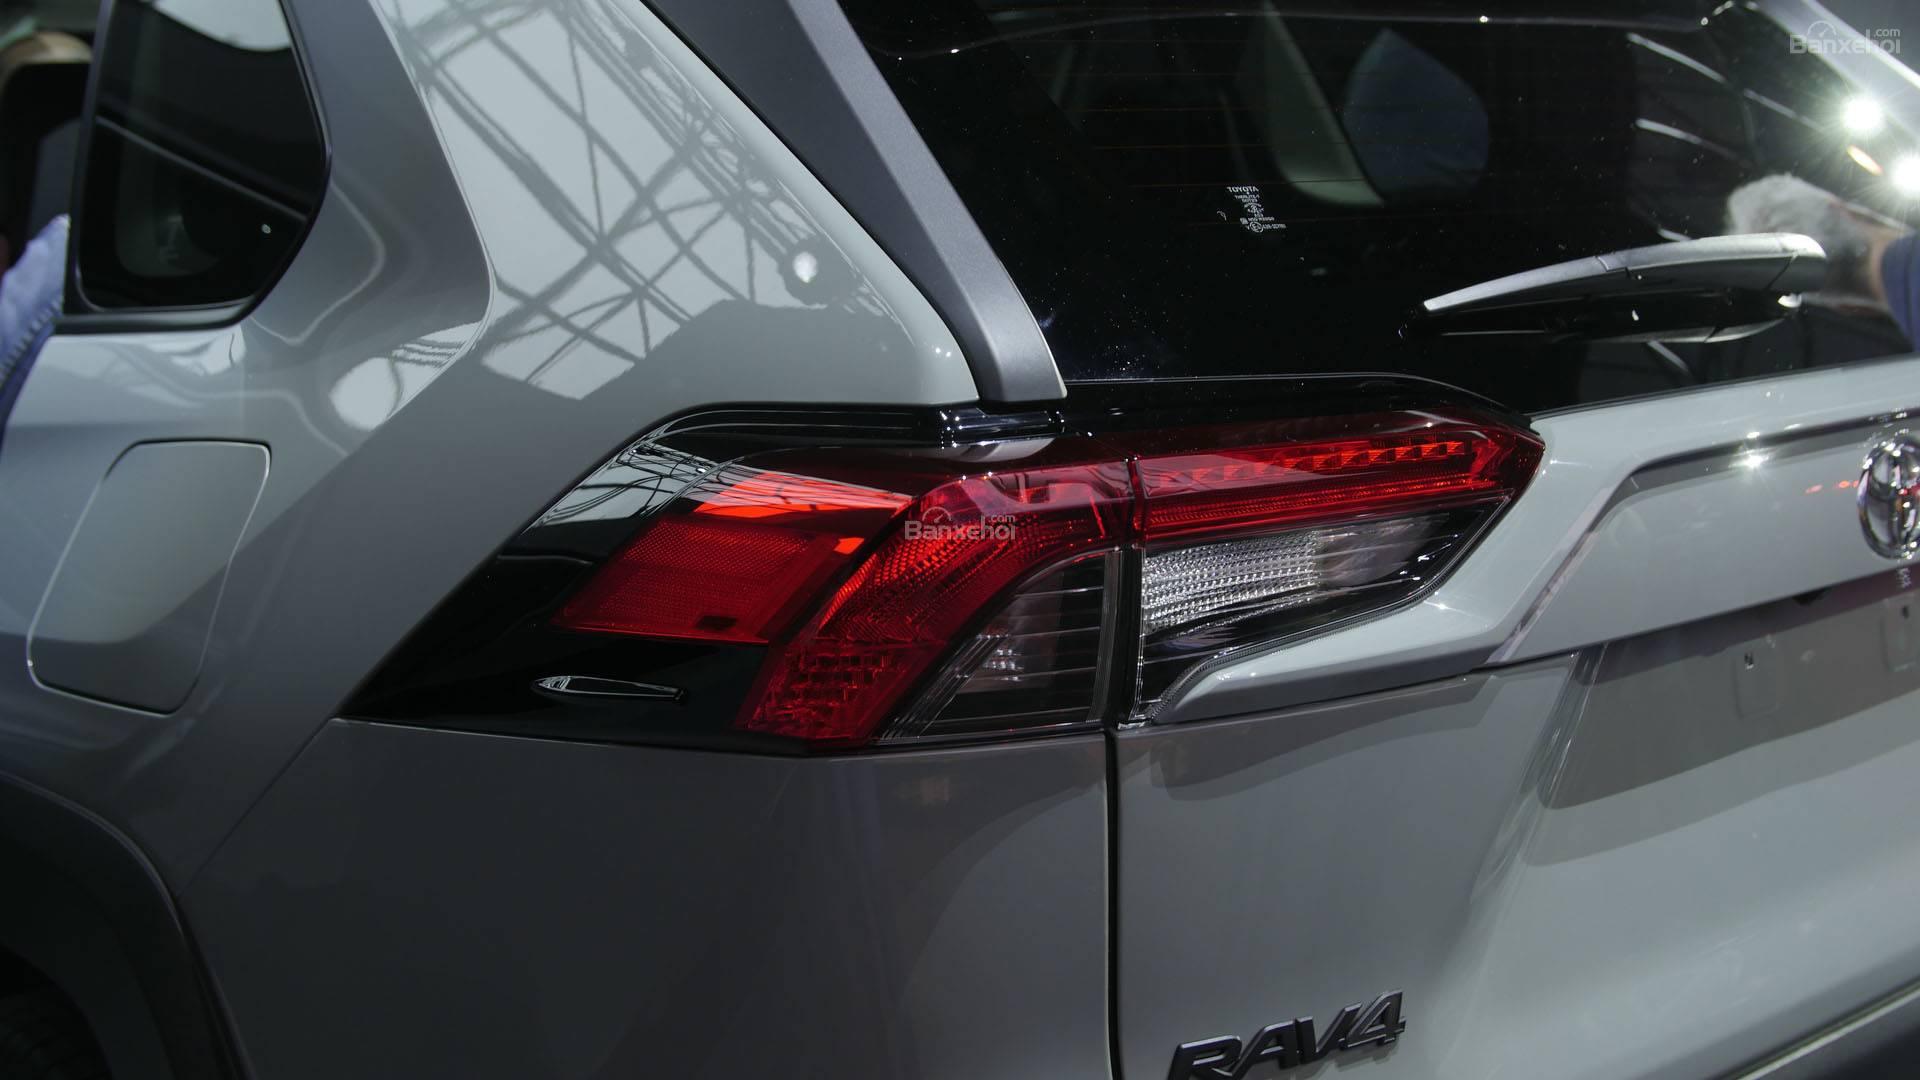 Đánh giá xe Toyota RAV4 2019 về thiết kế đuôi xe: Đèn sau góc cạnh 2